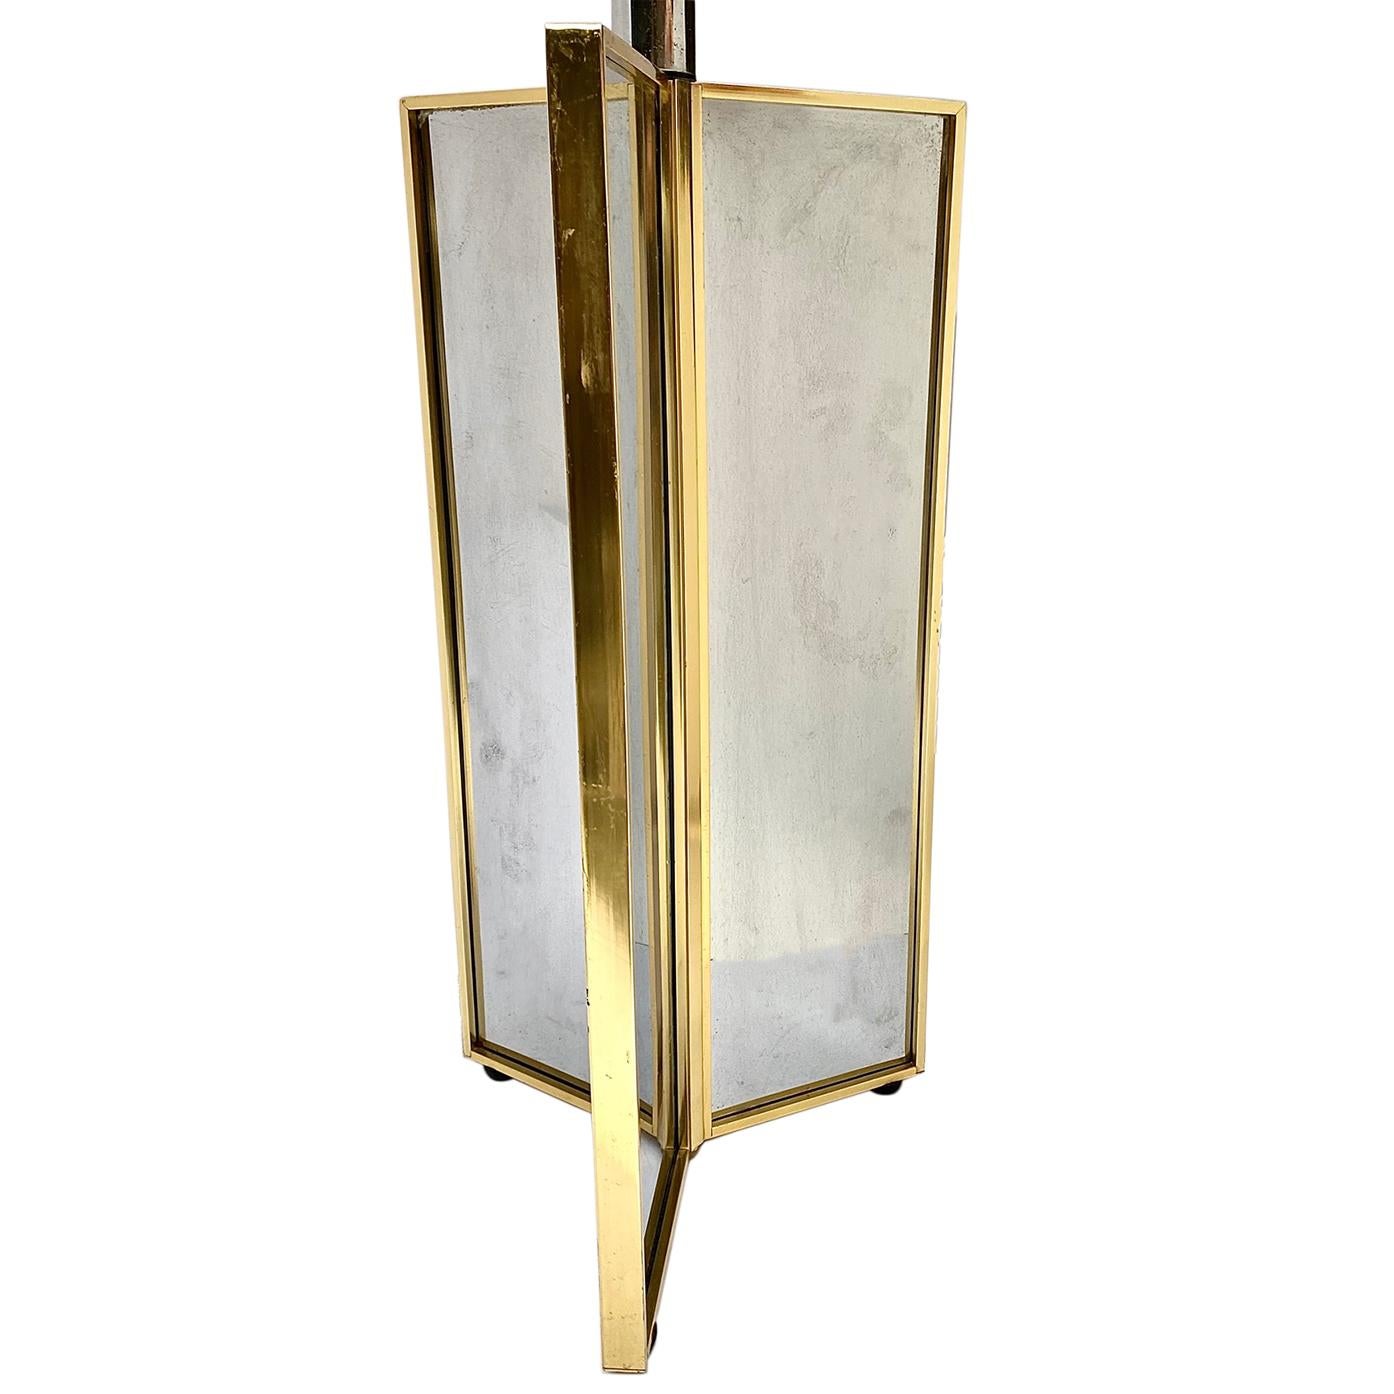 Une seule lampe de table française en miroir, datant des années 1970, avec des détails en laiton.

Mesures :
Hauteur du corps : 19
Hauteur jusqu'au reste de l'abat-jour : 31,5